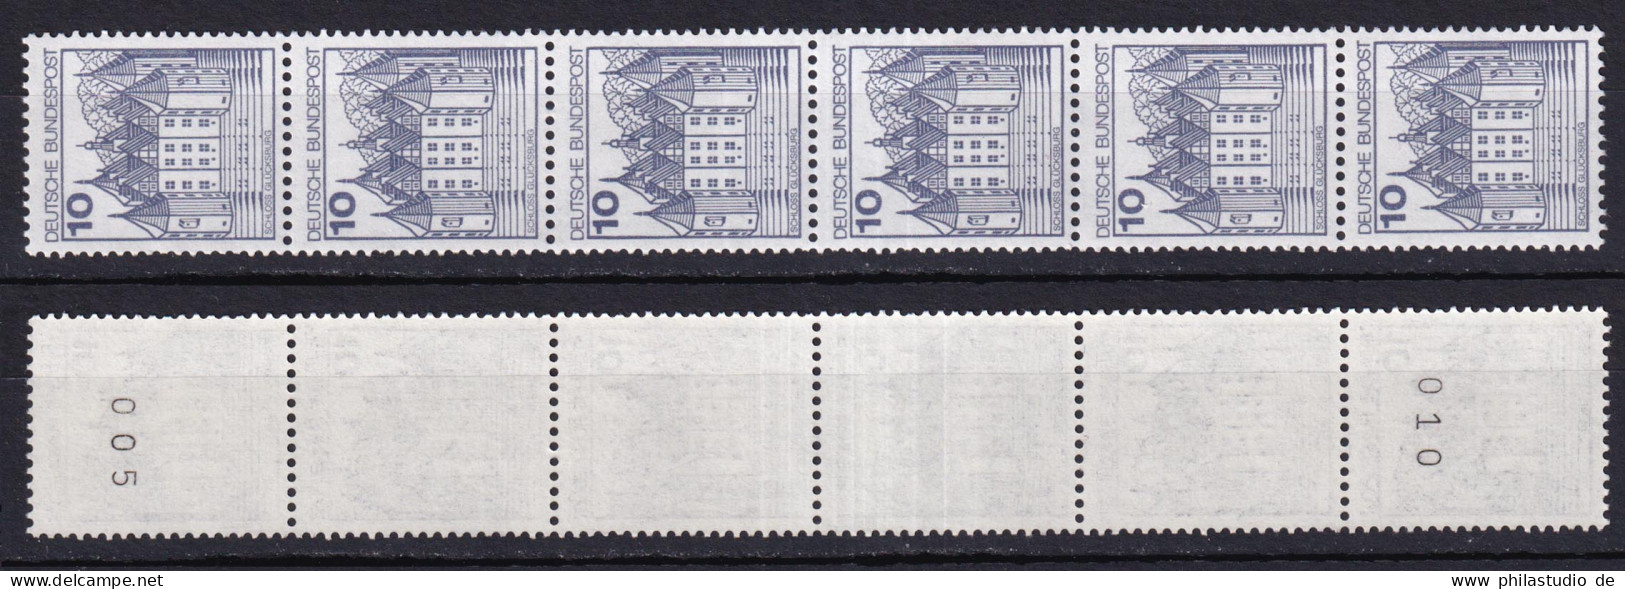 Bund 913 A RM 6er Streifen Burgen+Schlösser 10 Pf Postfrisch Neue Floureszenz - Roller Precancels